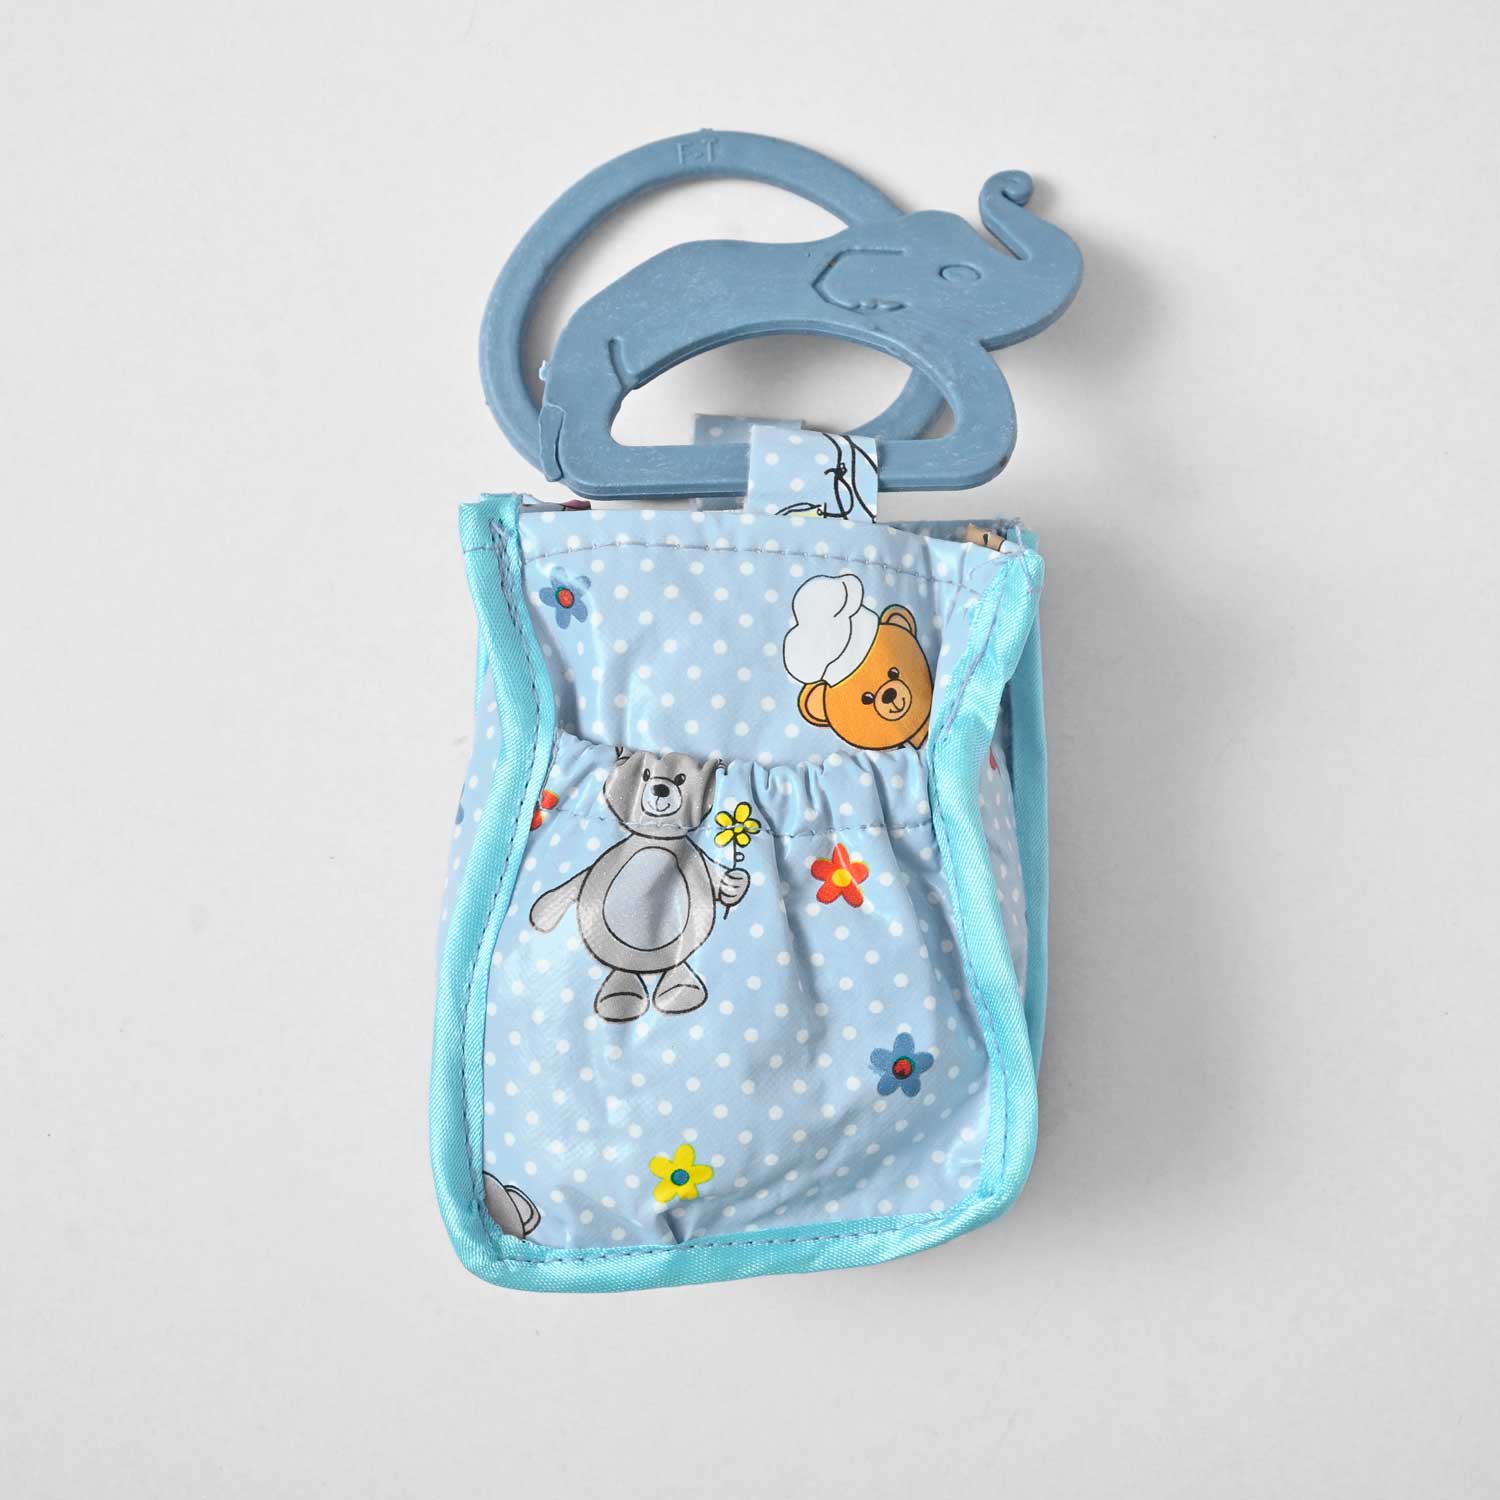 Baby Infant & Toddler's Feeding Bottle Cover